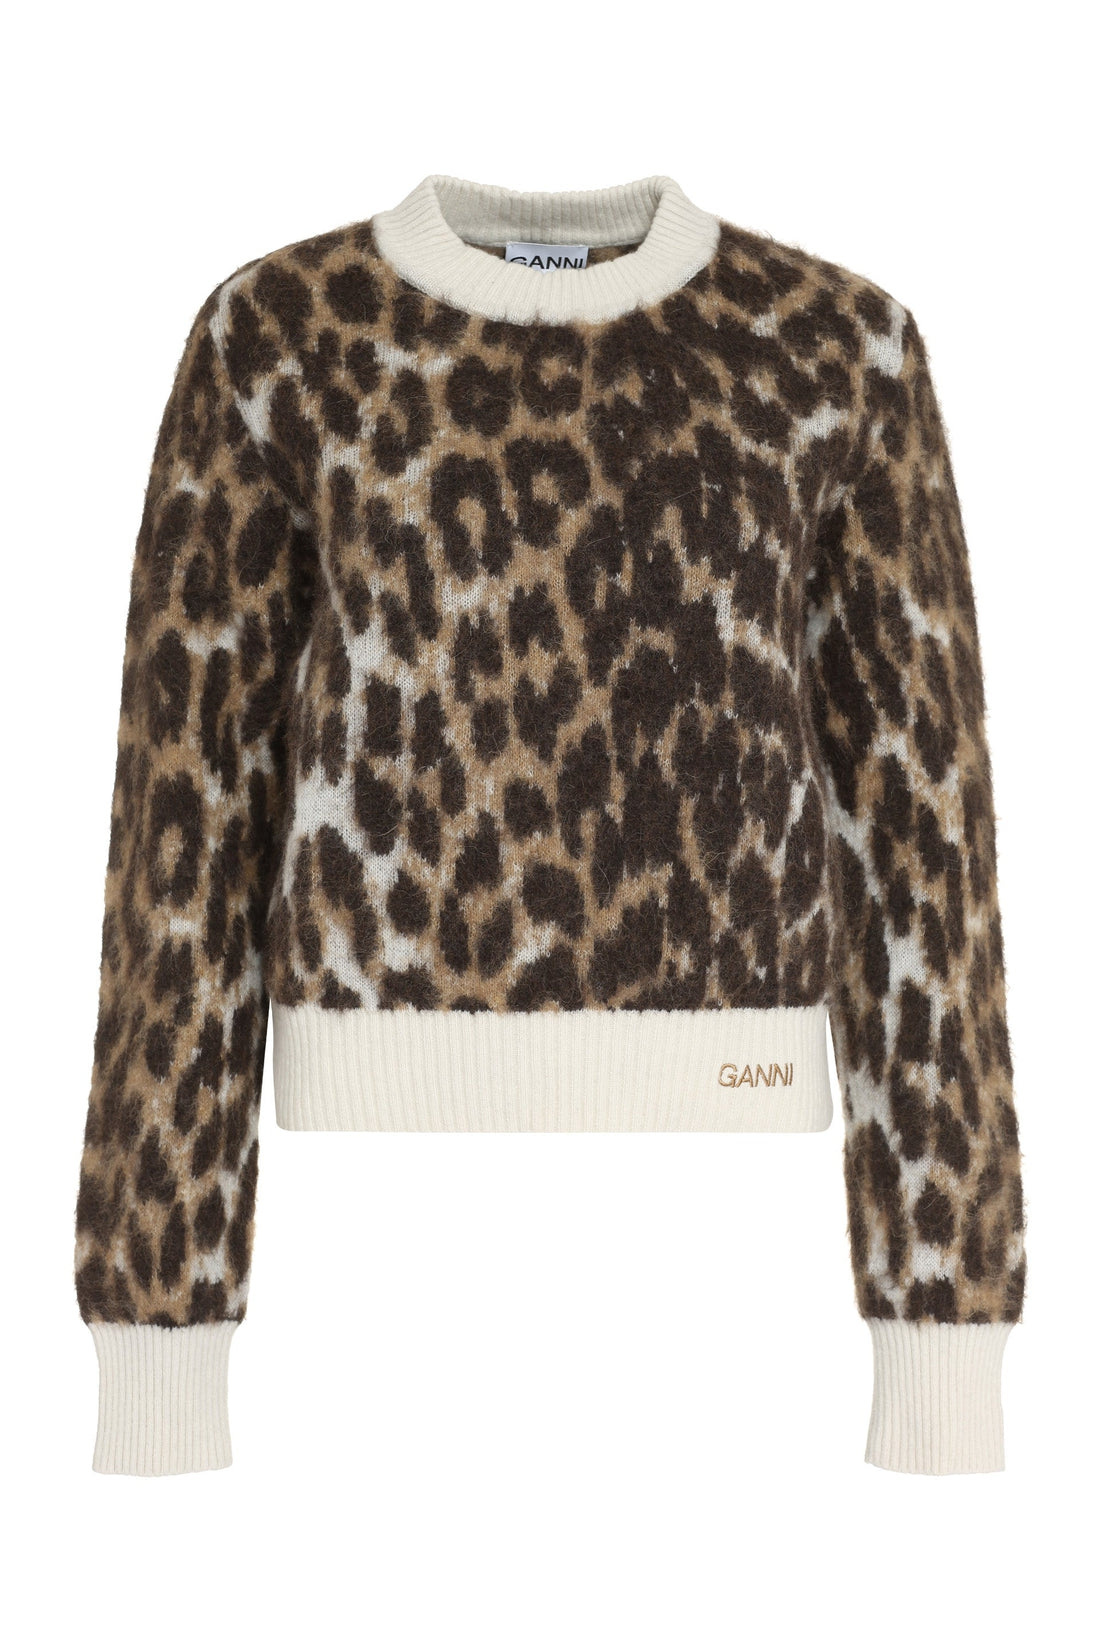 GANNI-OUTLET-SALE-Leopard motif sweater-ARCHIVIST